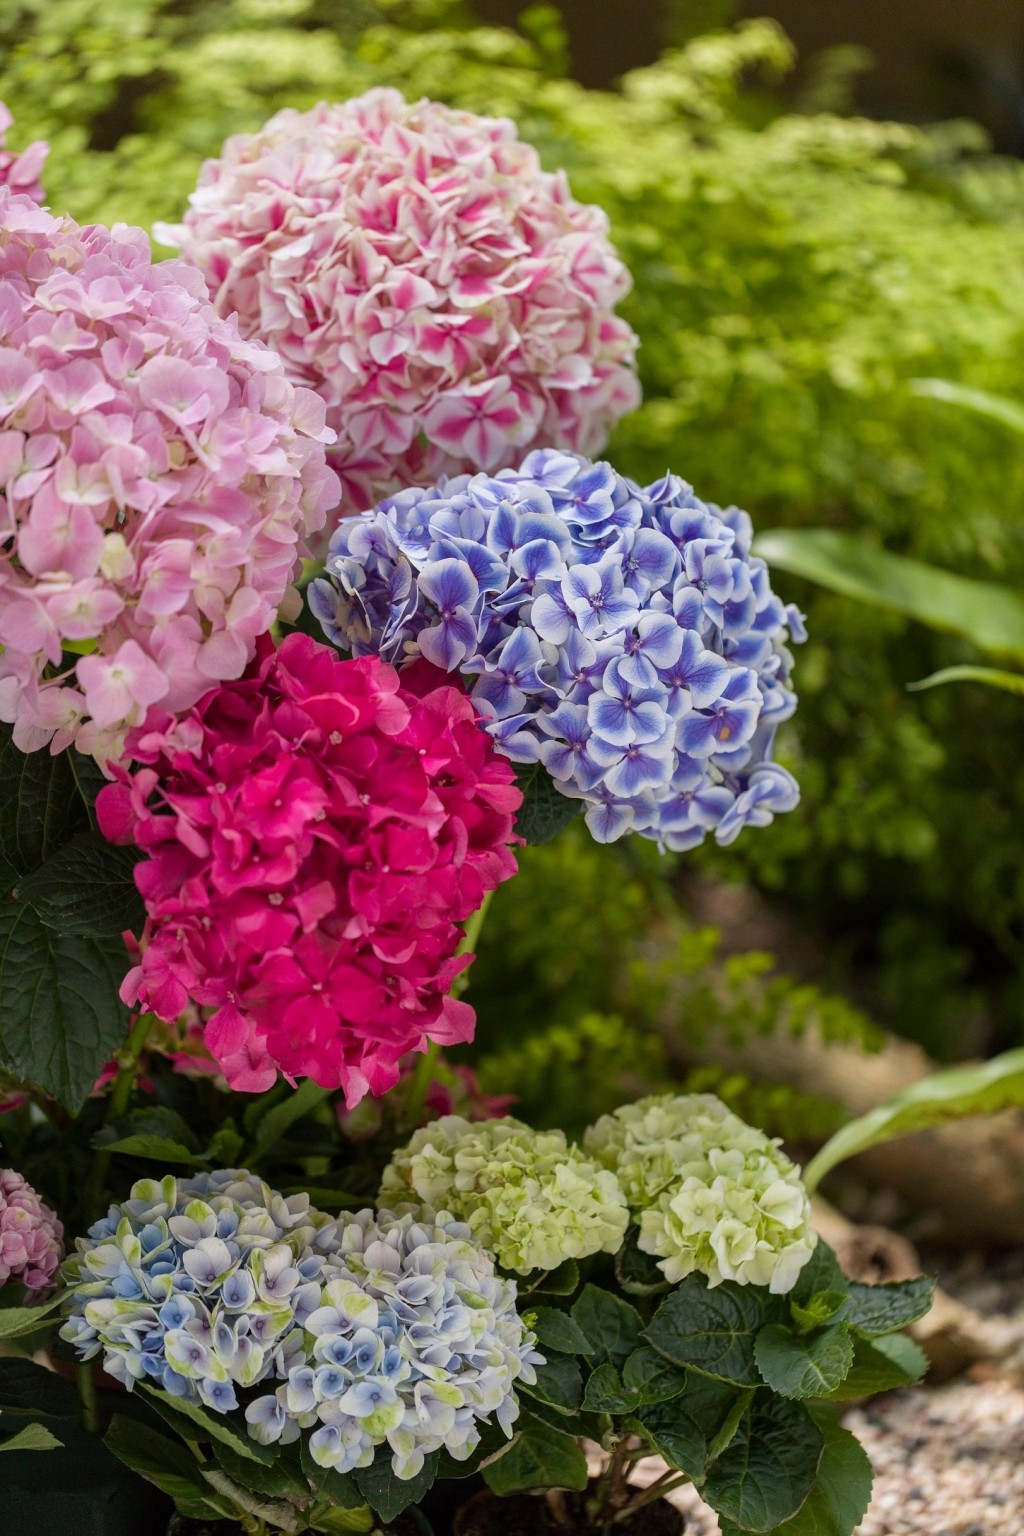 常见的绣球花有紫色、蓝色、粉红色、紫红色、白色及青色。政府新闻处